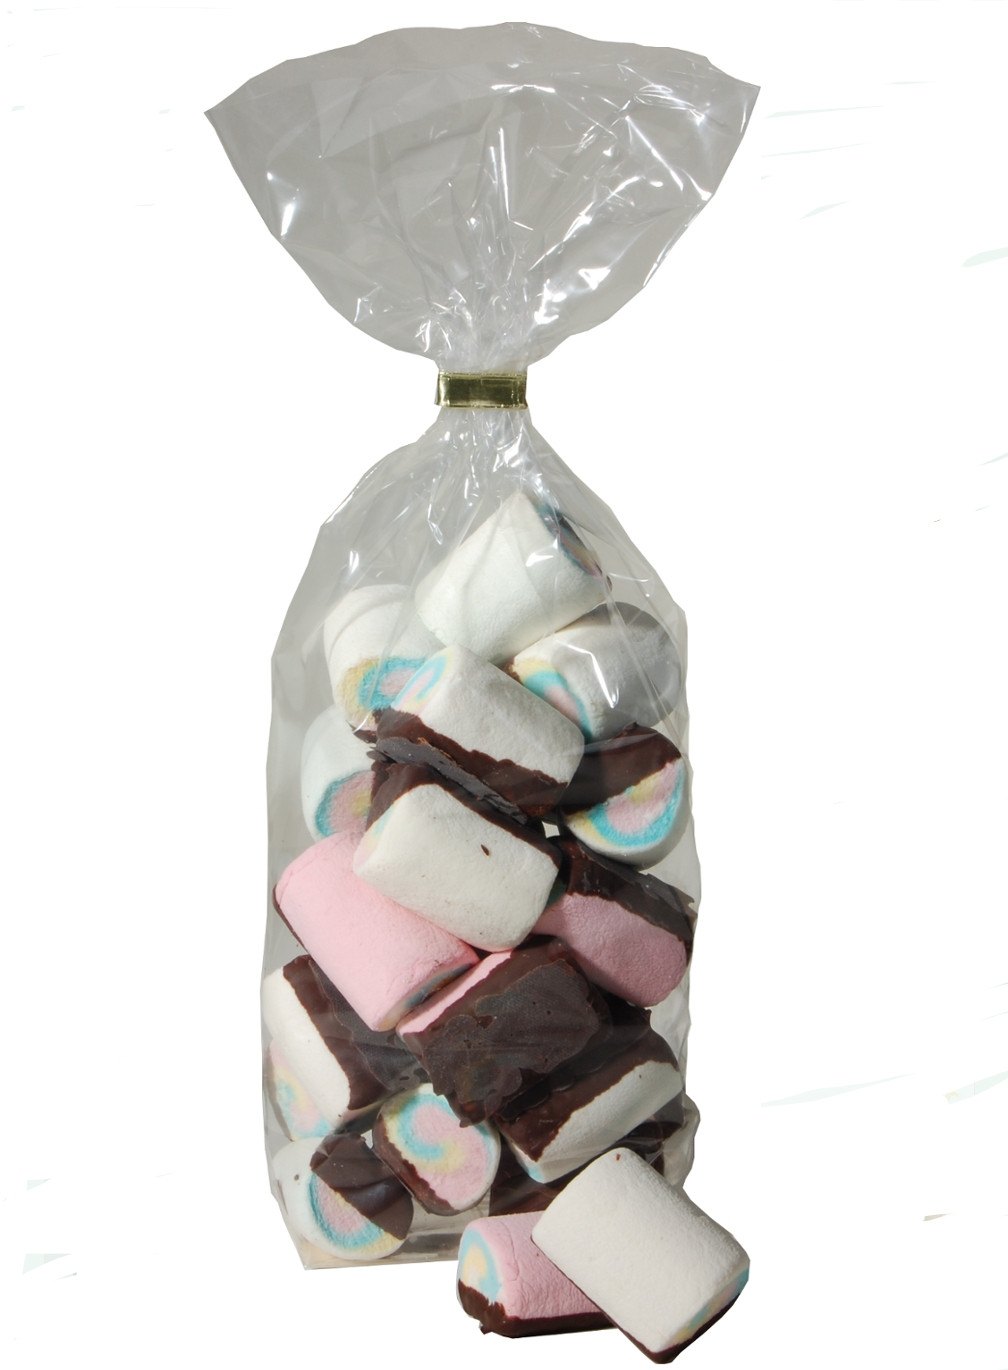 Marshmallow mini mit schokolade